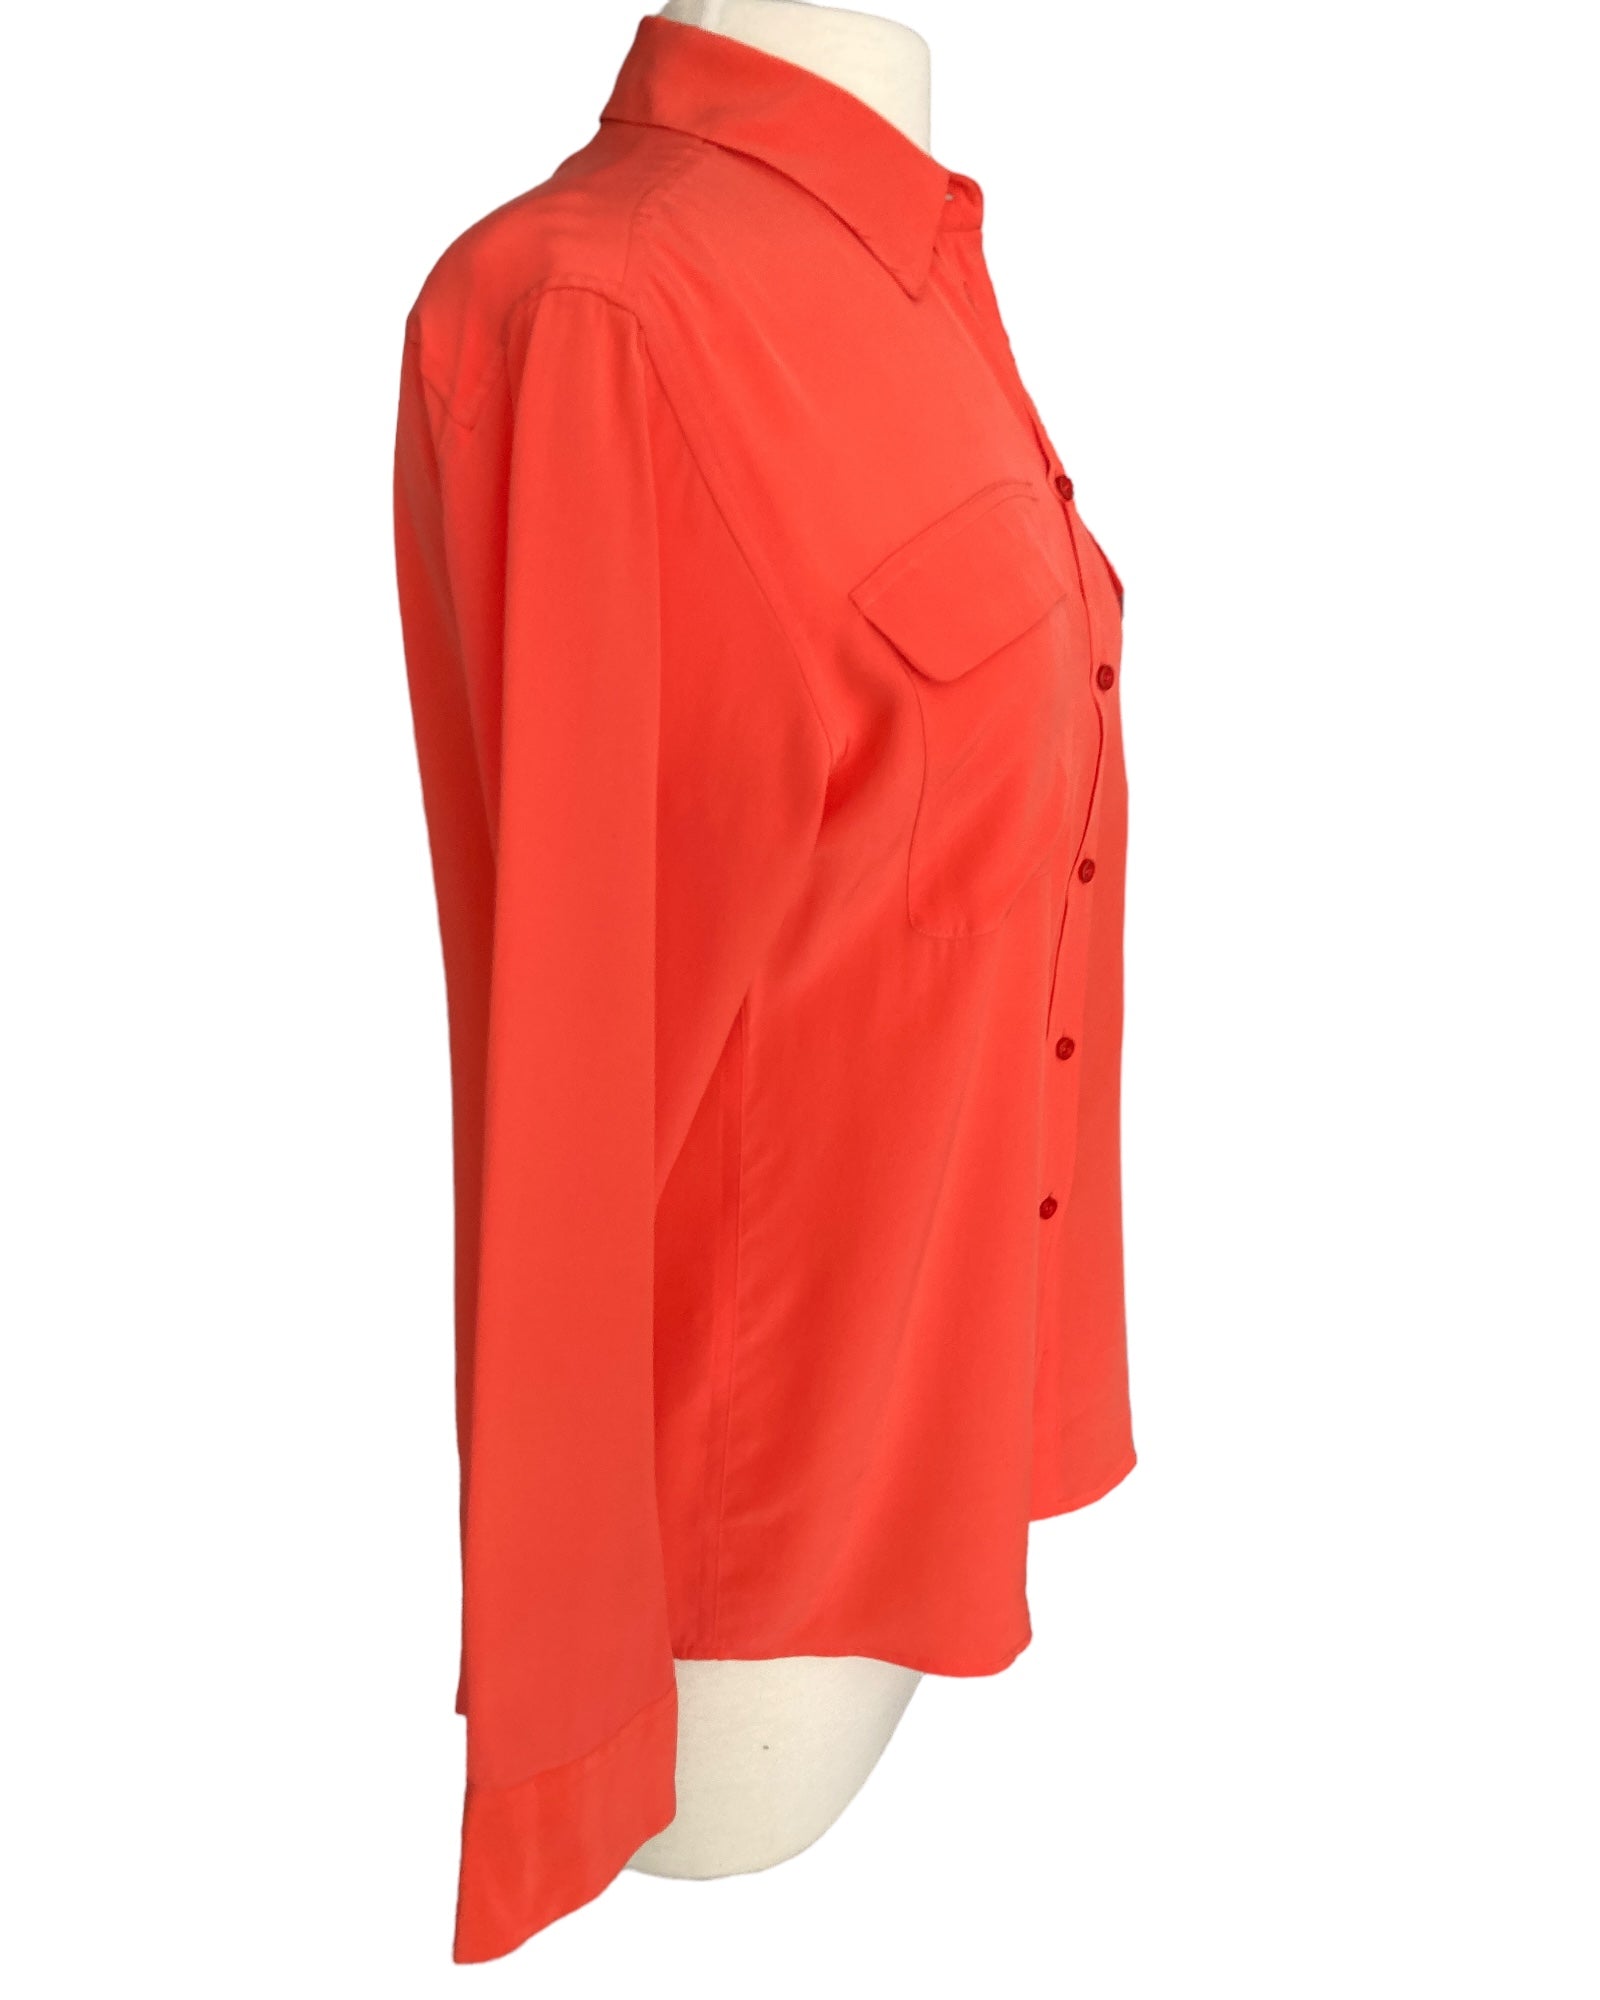 Equipment Orange Silk Shirt, S